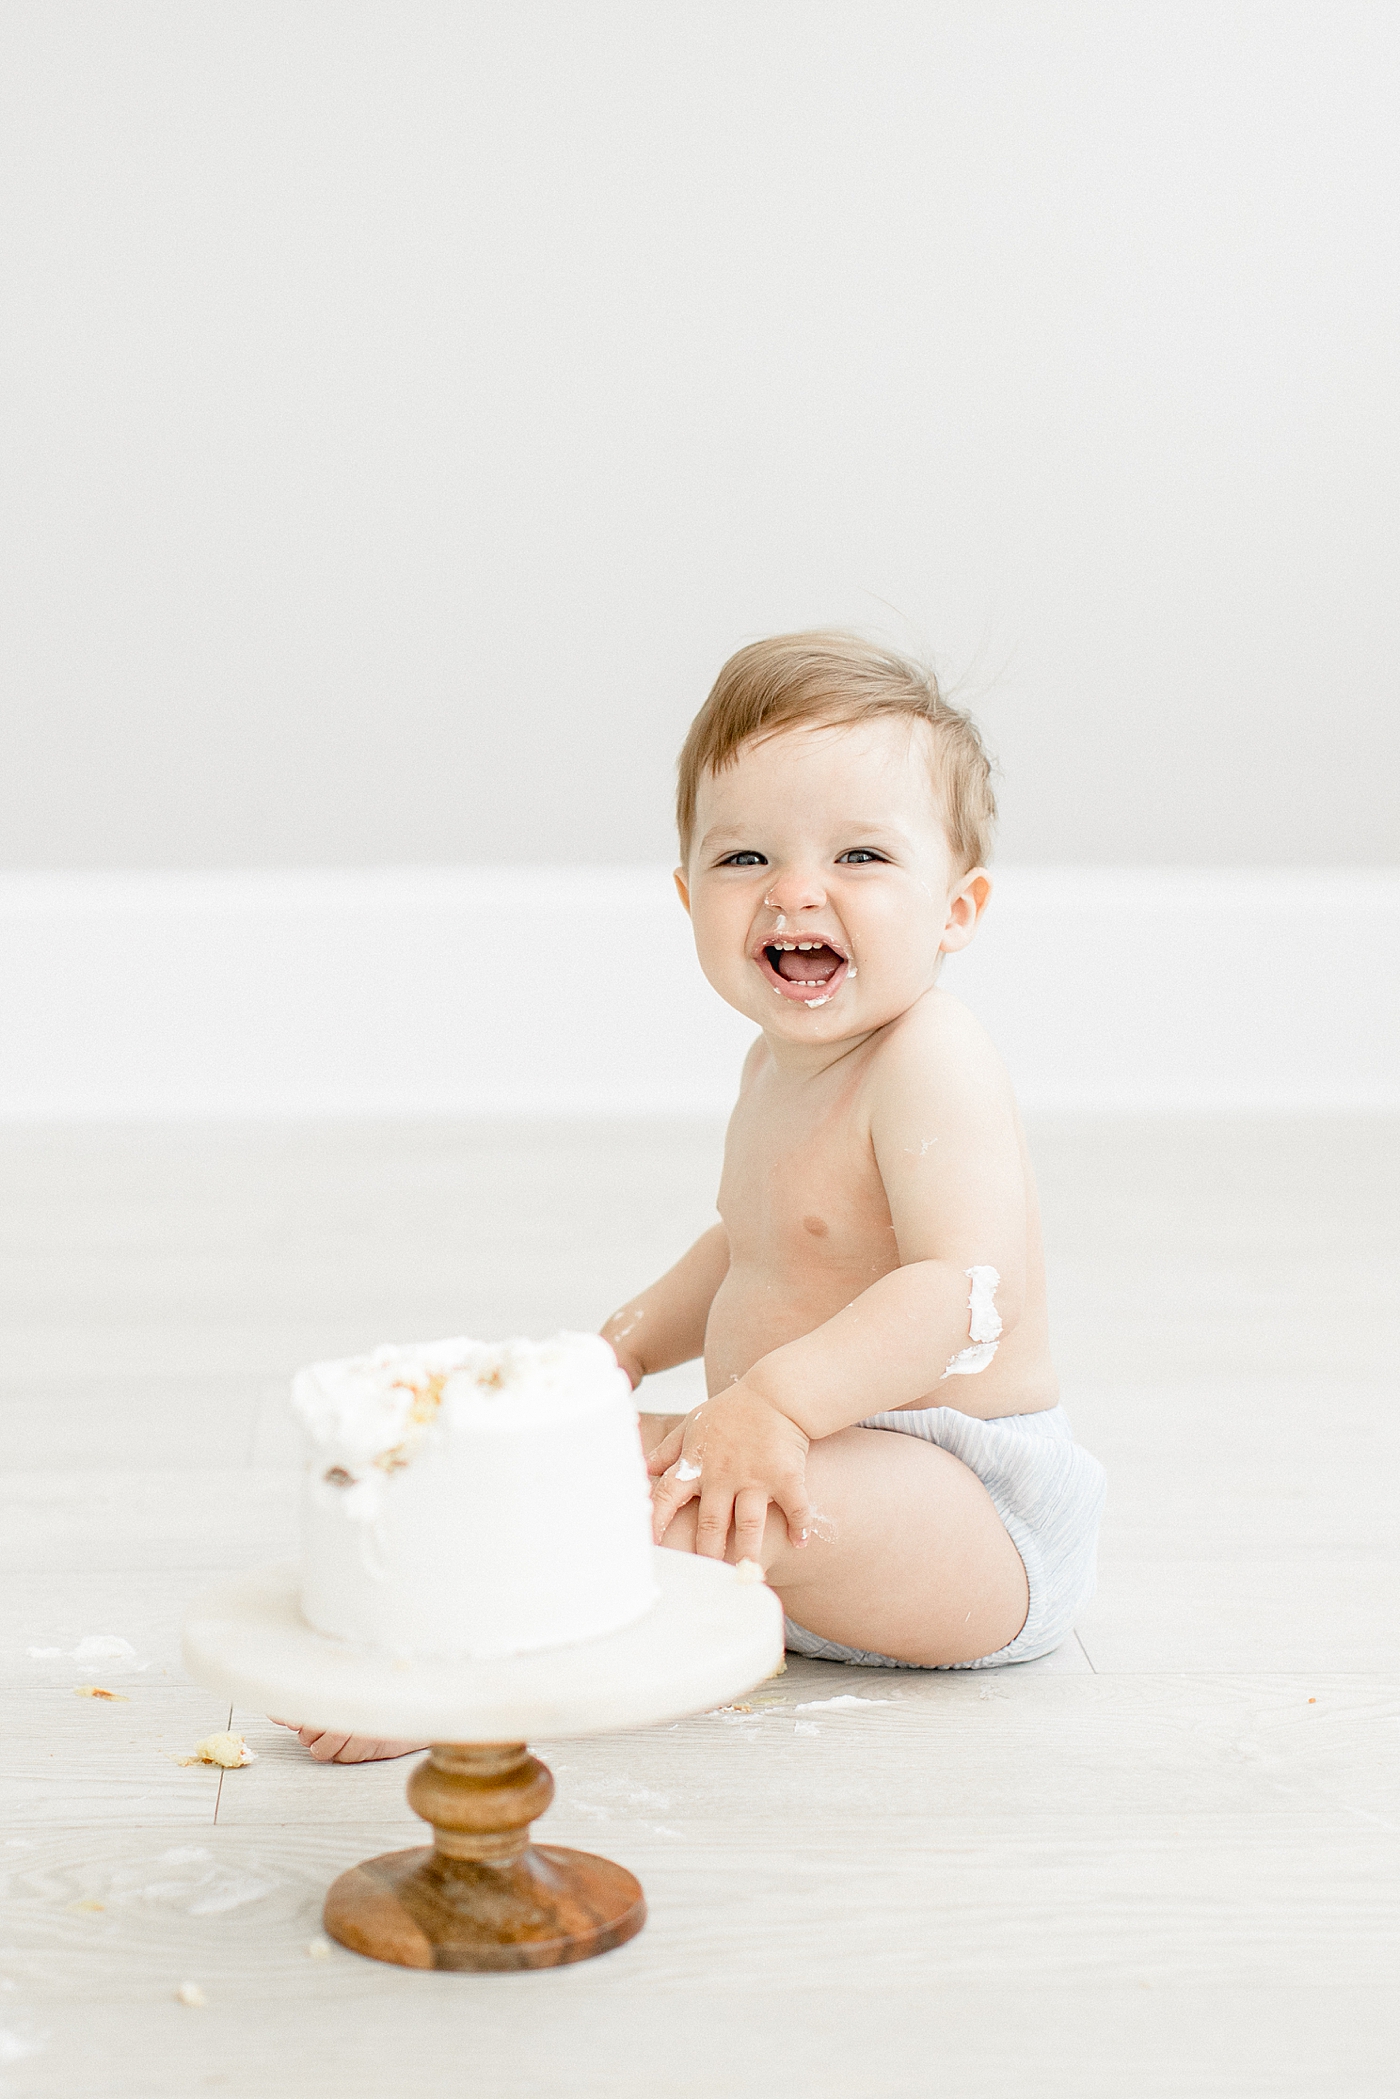 One year old cake smash photoshoot. Photo by Brittany Elise Photography.